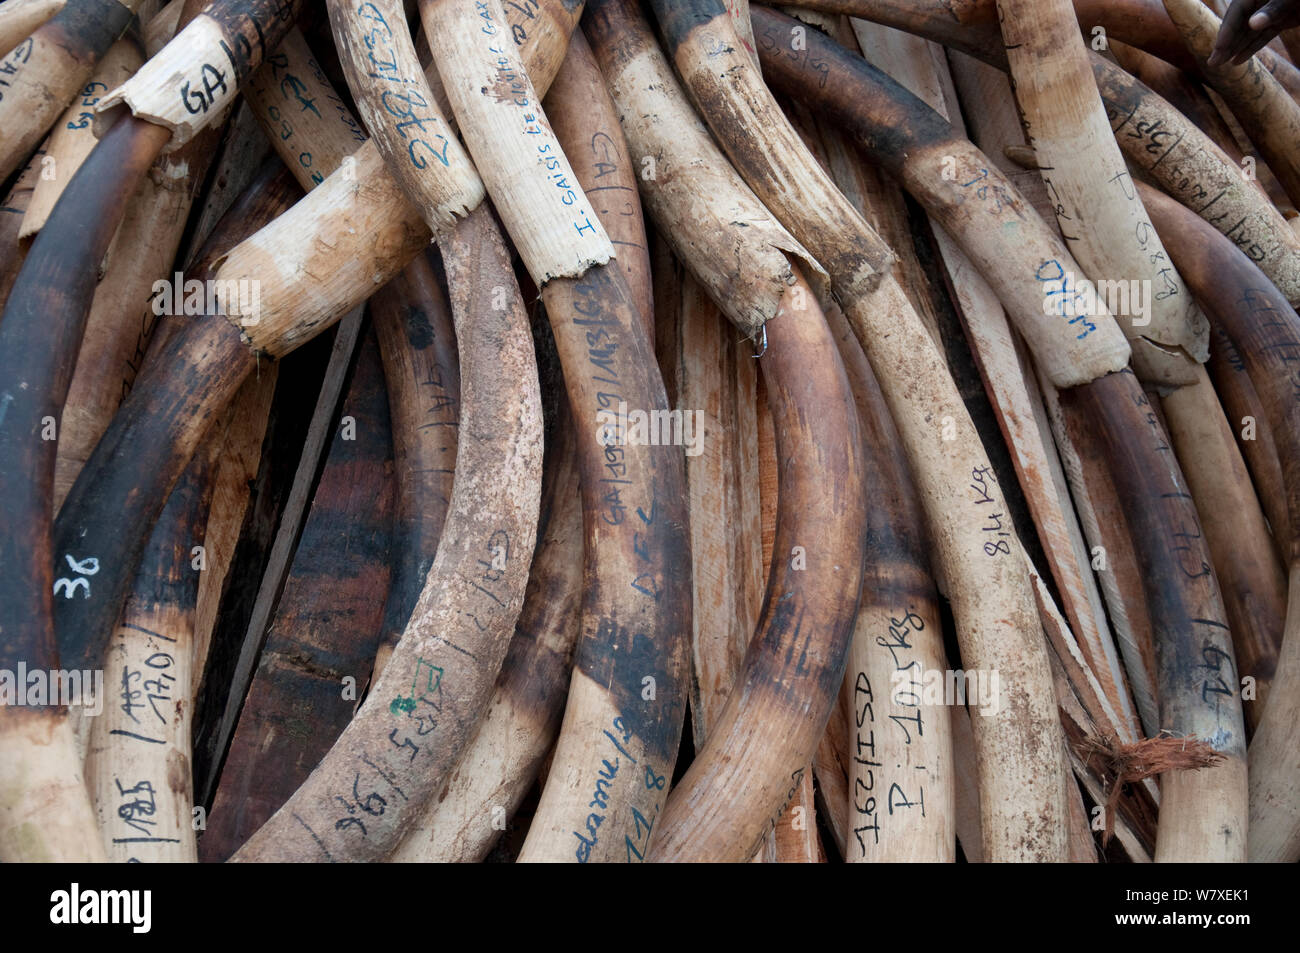 Afrikanische Waldelefant (Loxodonta cyclotis) Stoßzähne aufgetürmt vor der Regierung Côte d'Ivoire brennen mit 6 Tonnen (im Wert von 6 Millionen US-Dollar) von Elfenbein, Libreville, Gabun, 6. Juni 2012. Stockfoto